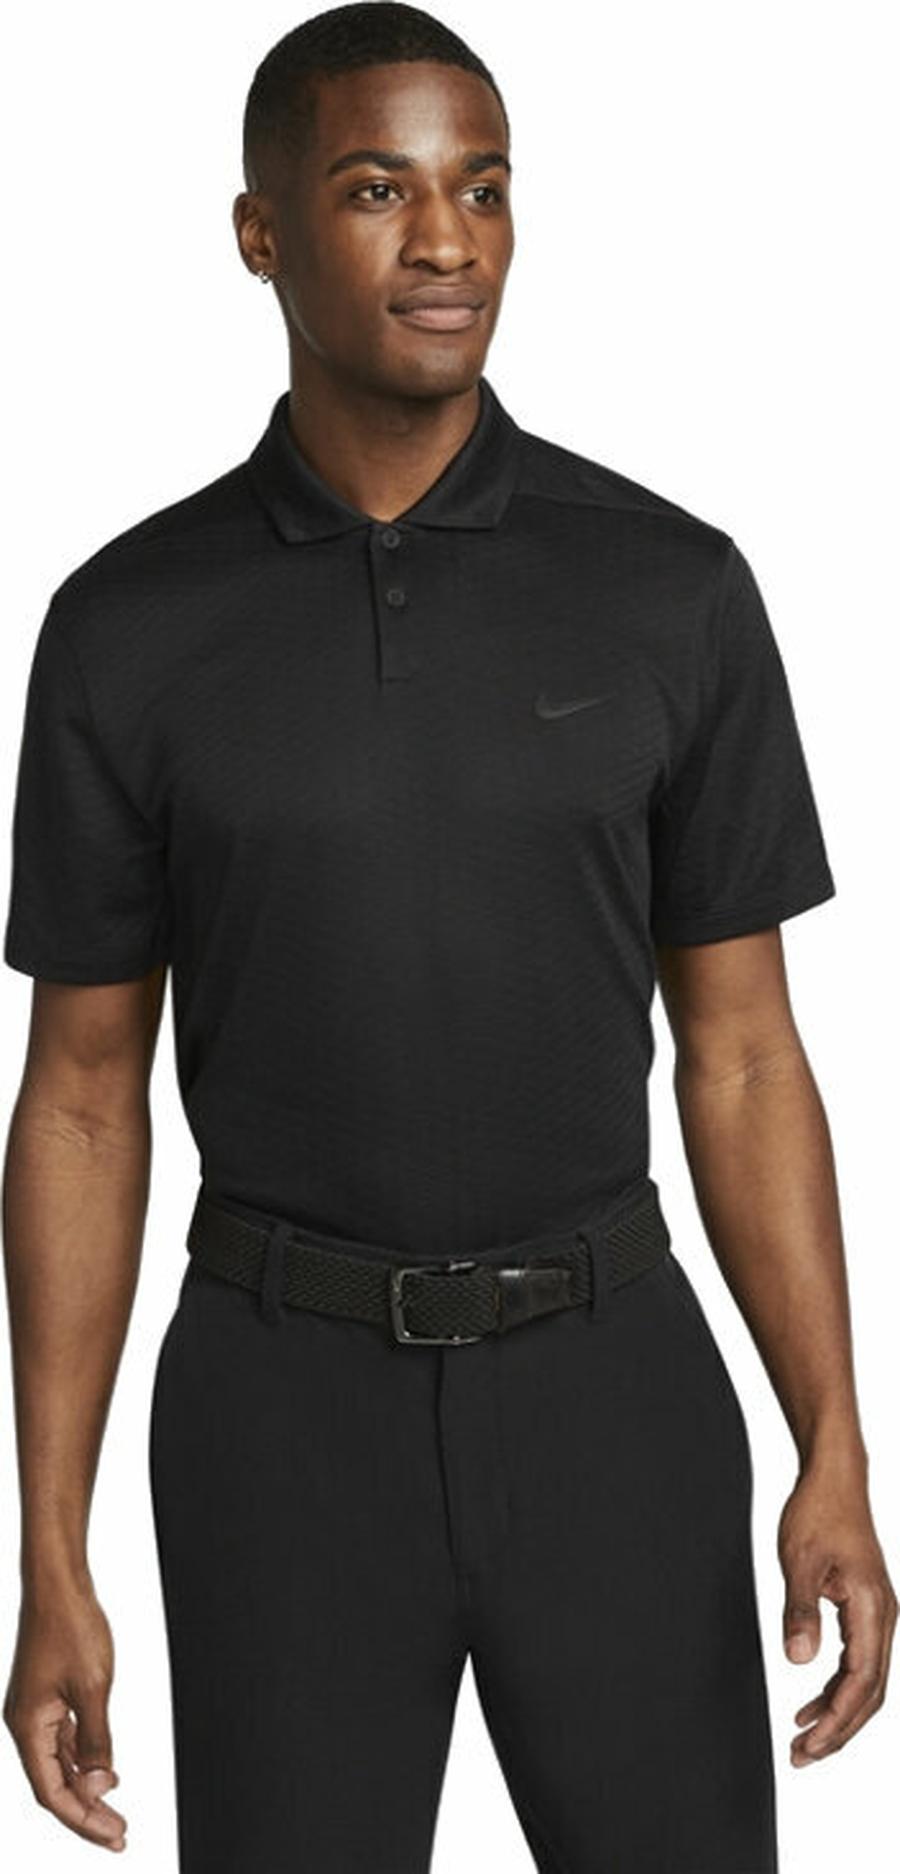 Nike Dri-Fit Vapor Texture Mens Polo Shirt Black/Black M